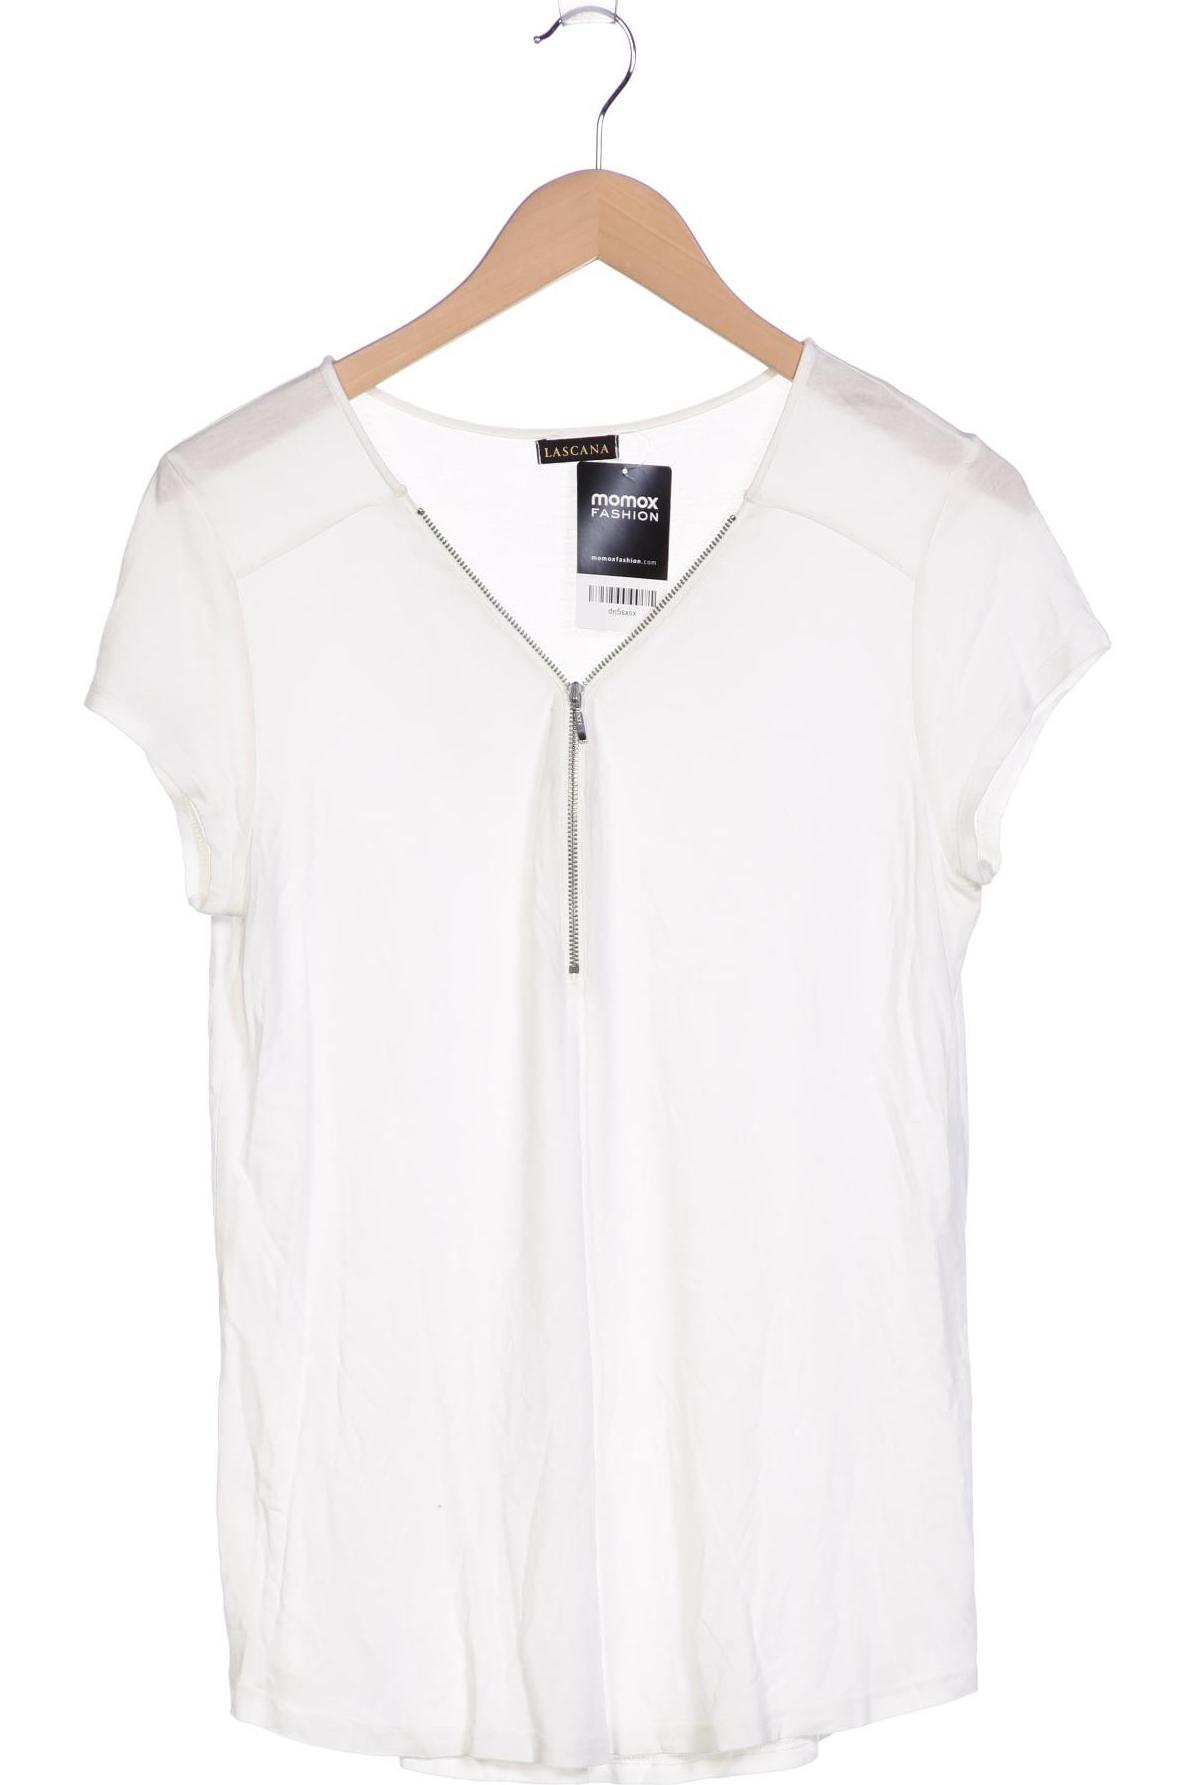 Lascana Damen T-Shirt, weiß, Gr. 38 von Lascana